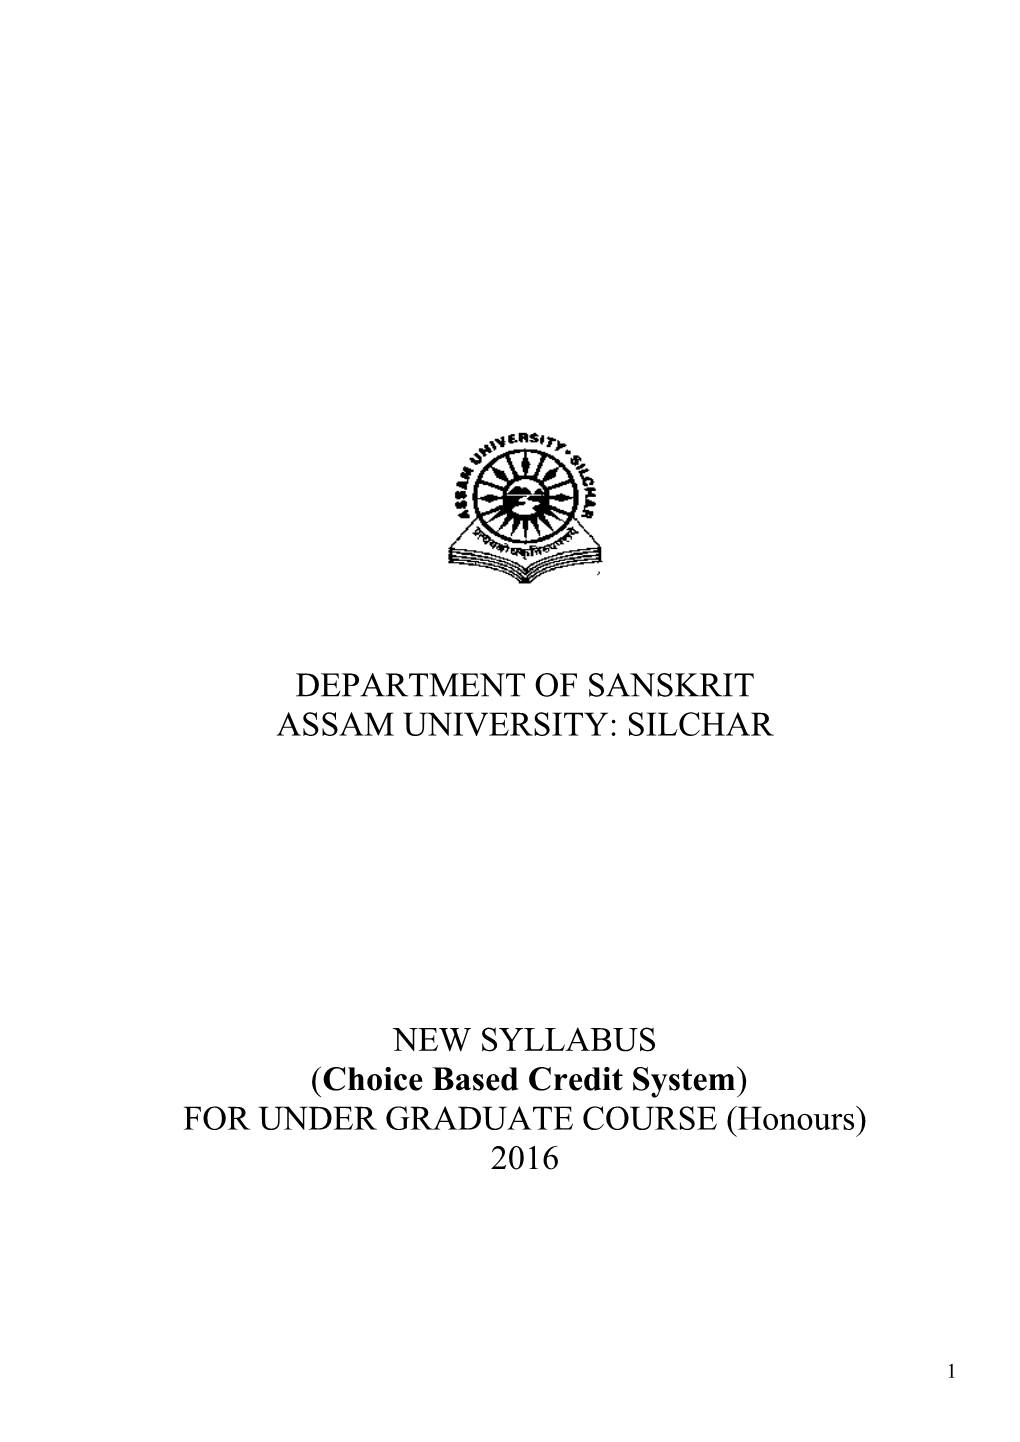 Department of Sanskrit Assam University: Silchar